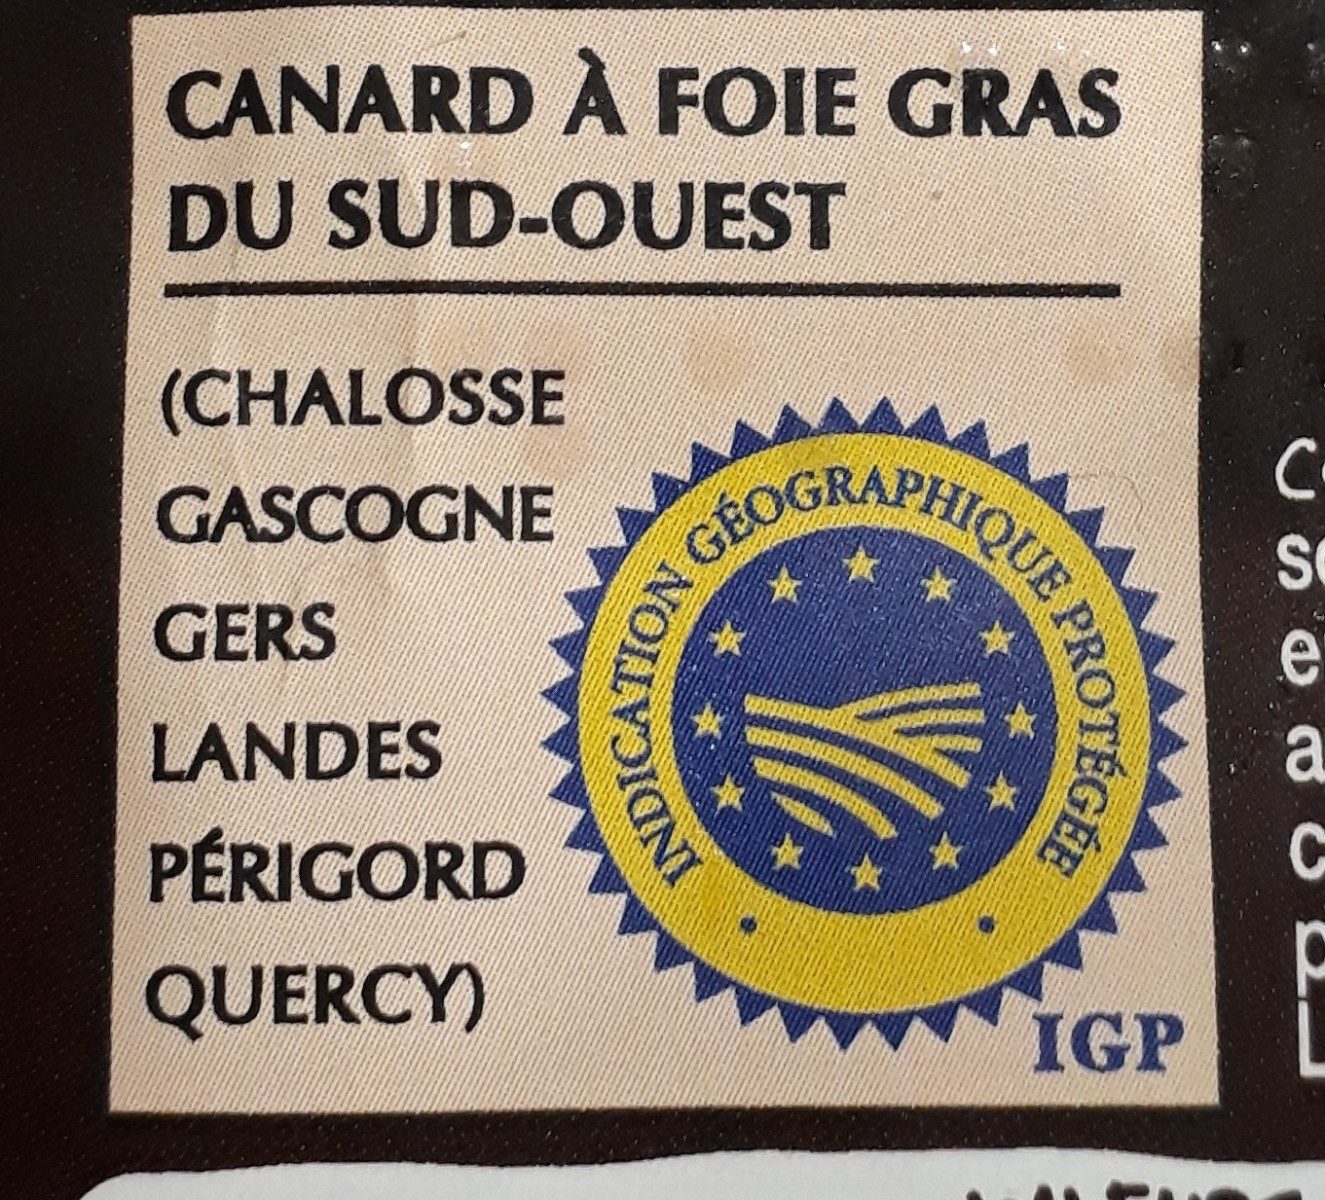 Magret de canard du sud-ouest cru - Ingredients - fr